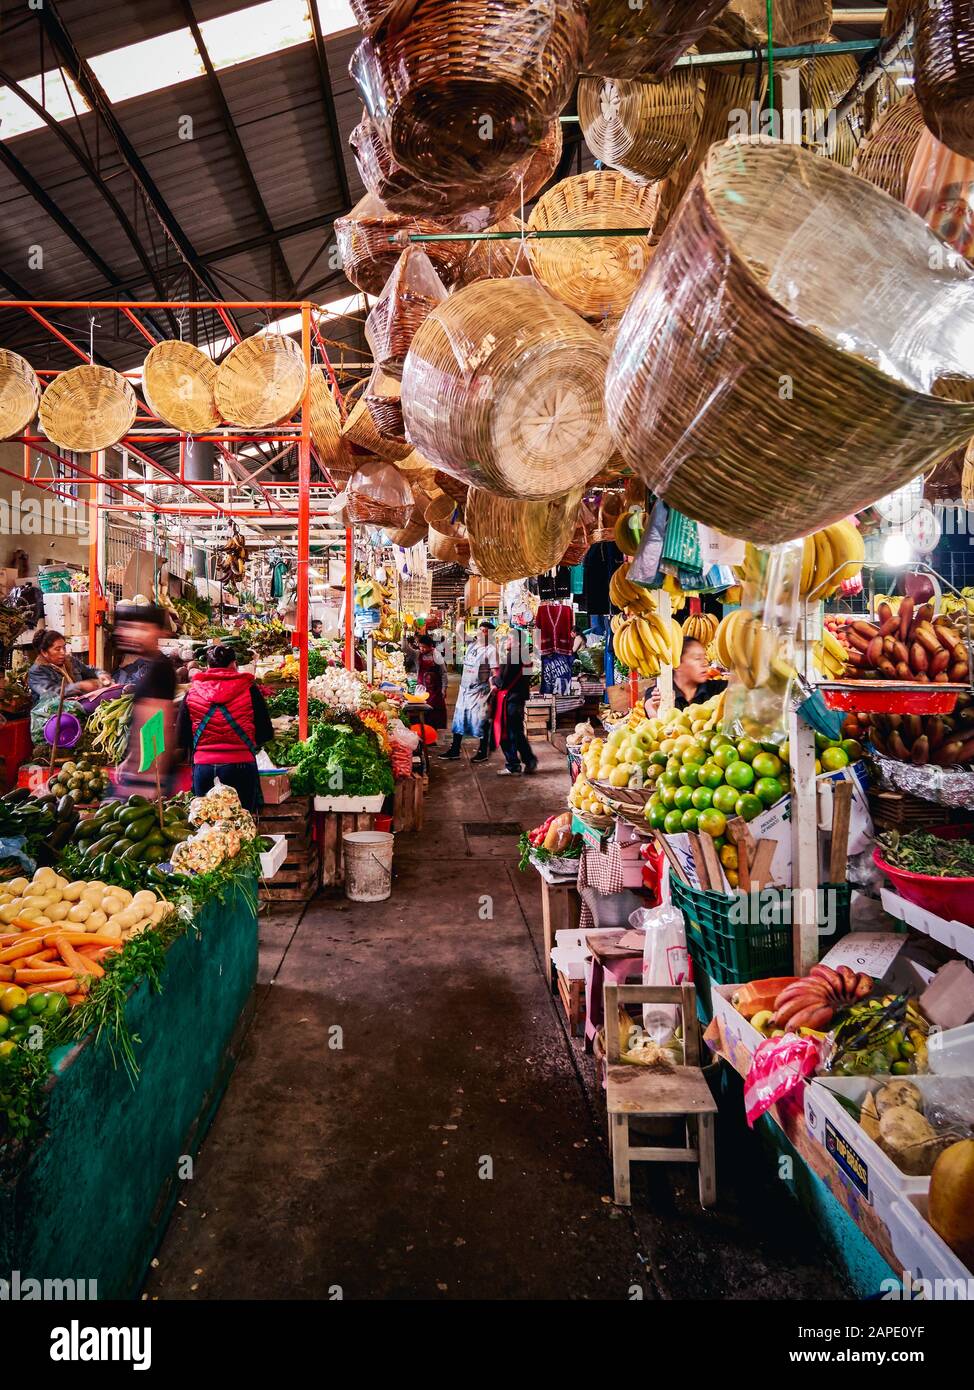 San Pedro Cholula, Mexiko, 17. Oktober 2018 - Farbenfroher Blick auf Obst- und Gemüsestände mit Verkäufern auf dem mexikanischen Markt San Pedro Cholula Stockfoto